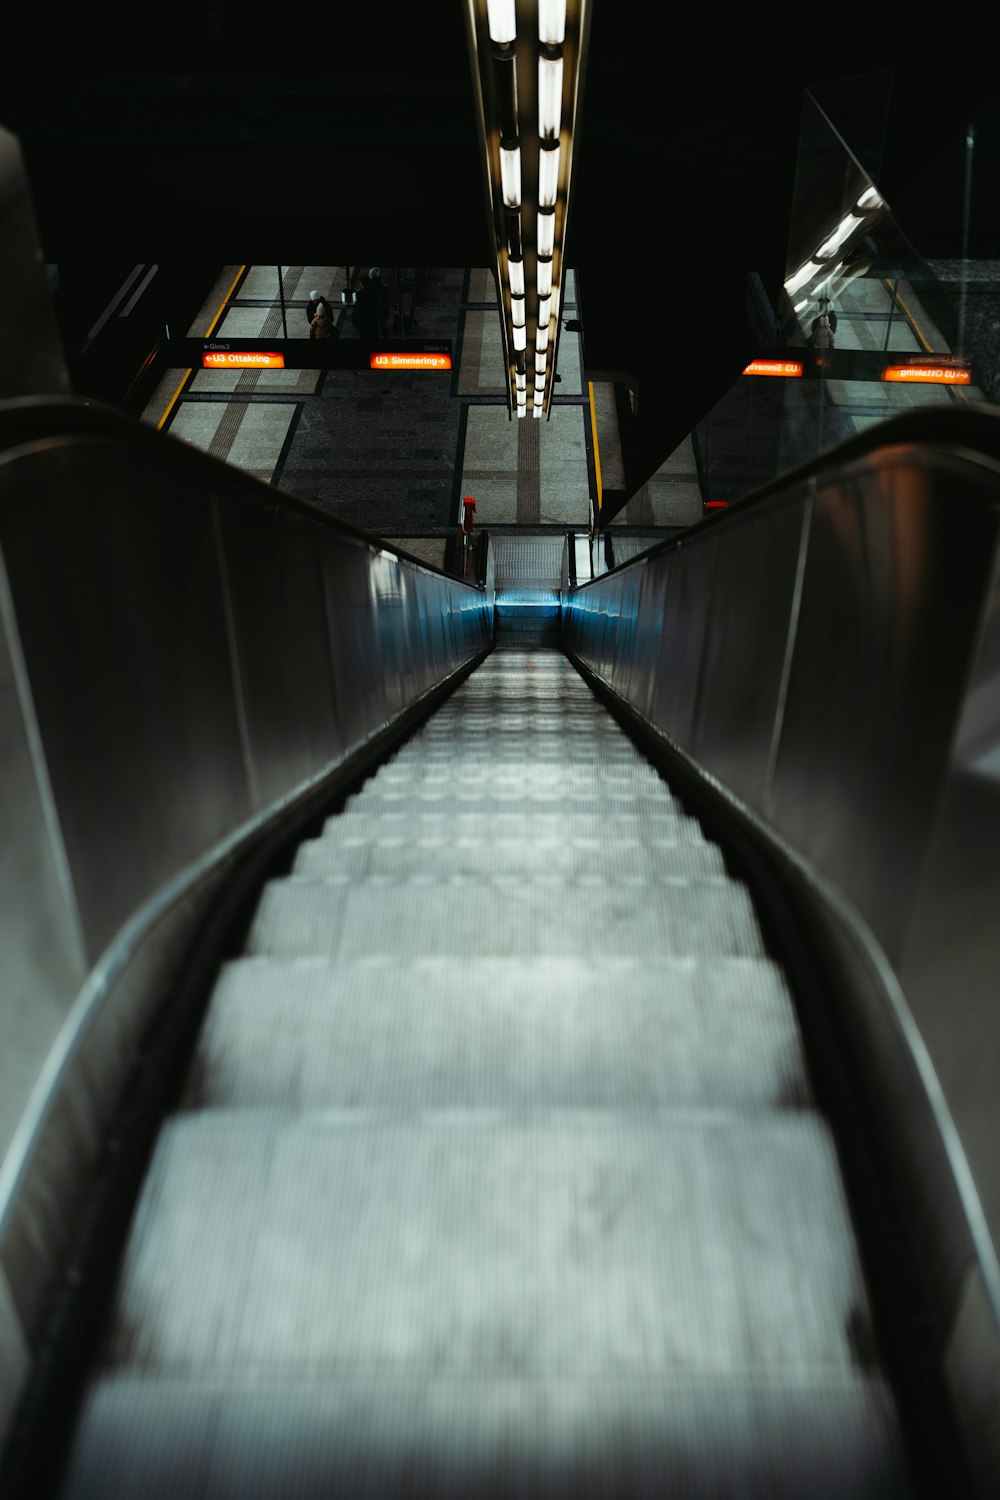 uma escada rolante em uma estação de metrô à noite